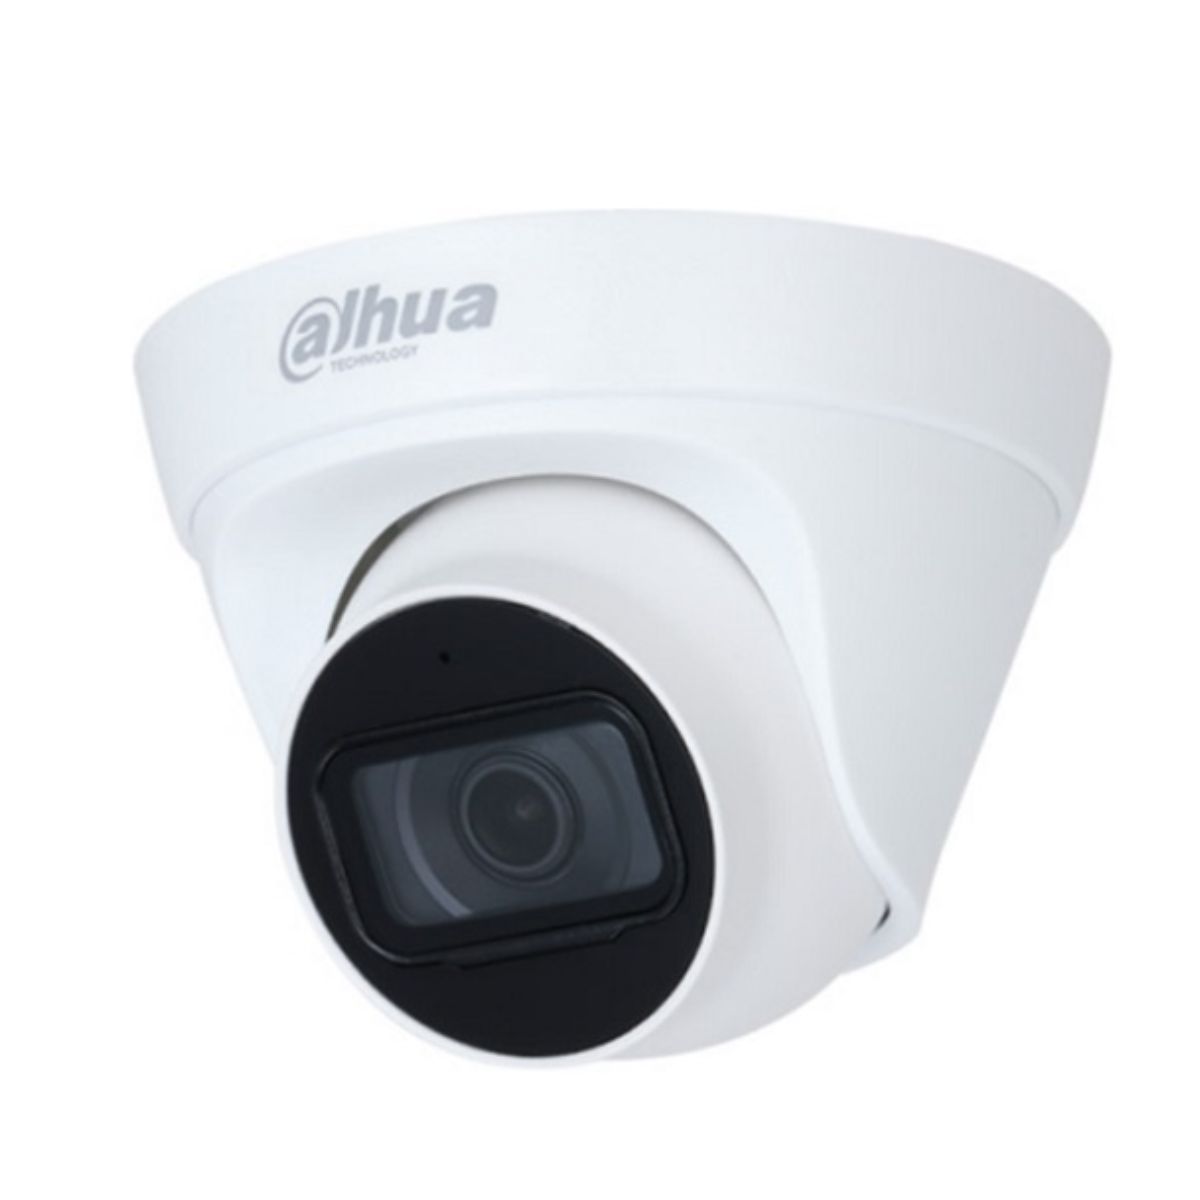 Camera IP Dome Dahua DH-IPC-HDW1430T1-A-S5 4MP, tích hợp míc, hồng ngoại 30m 